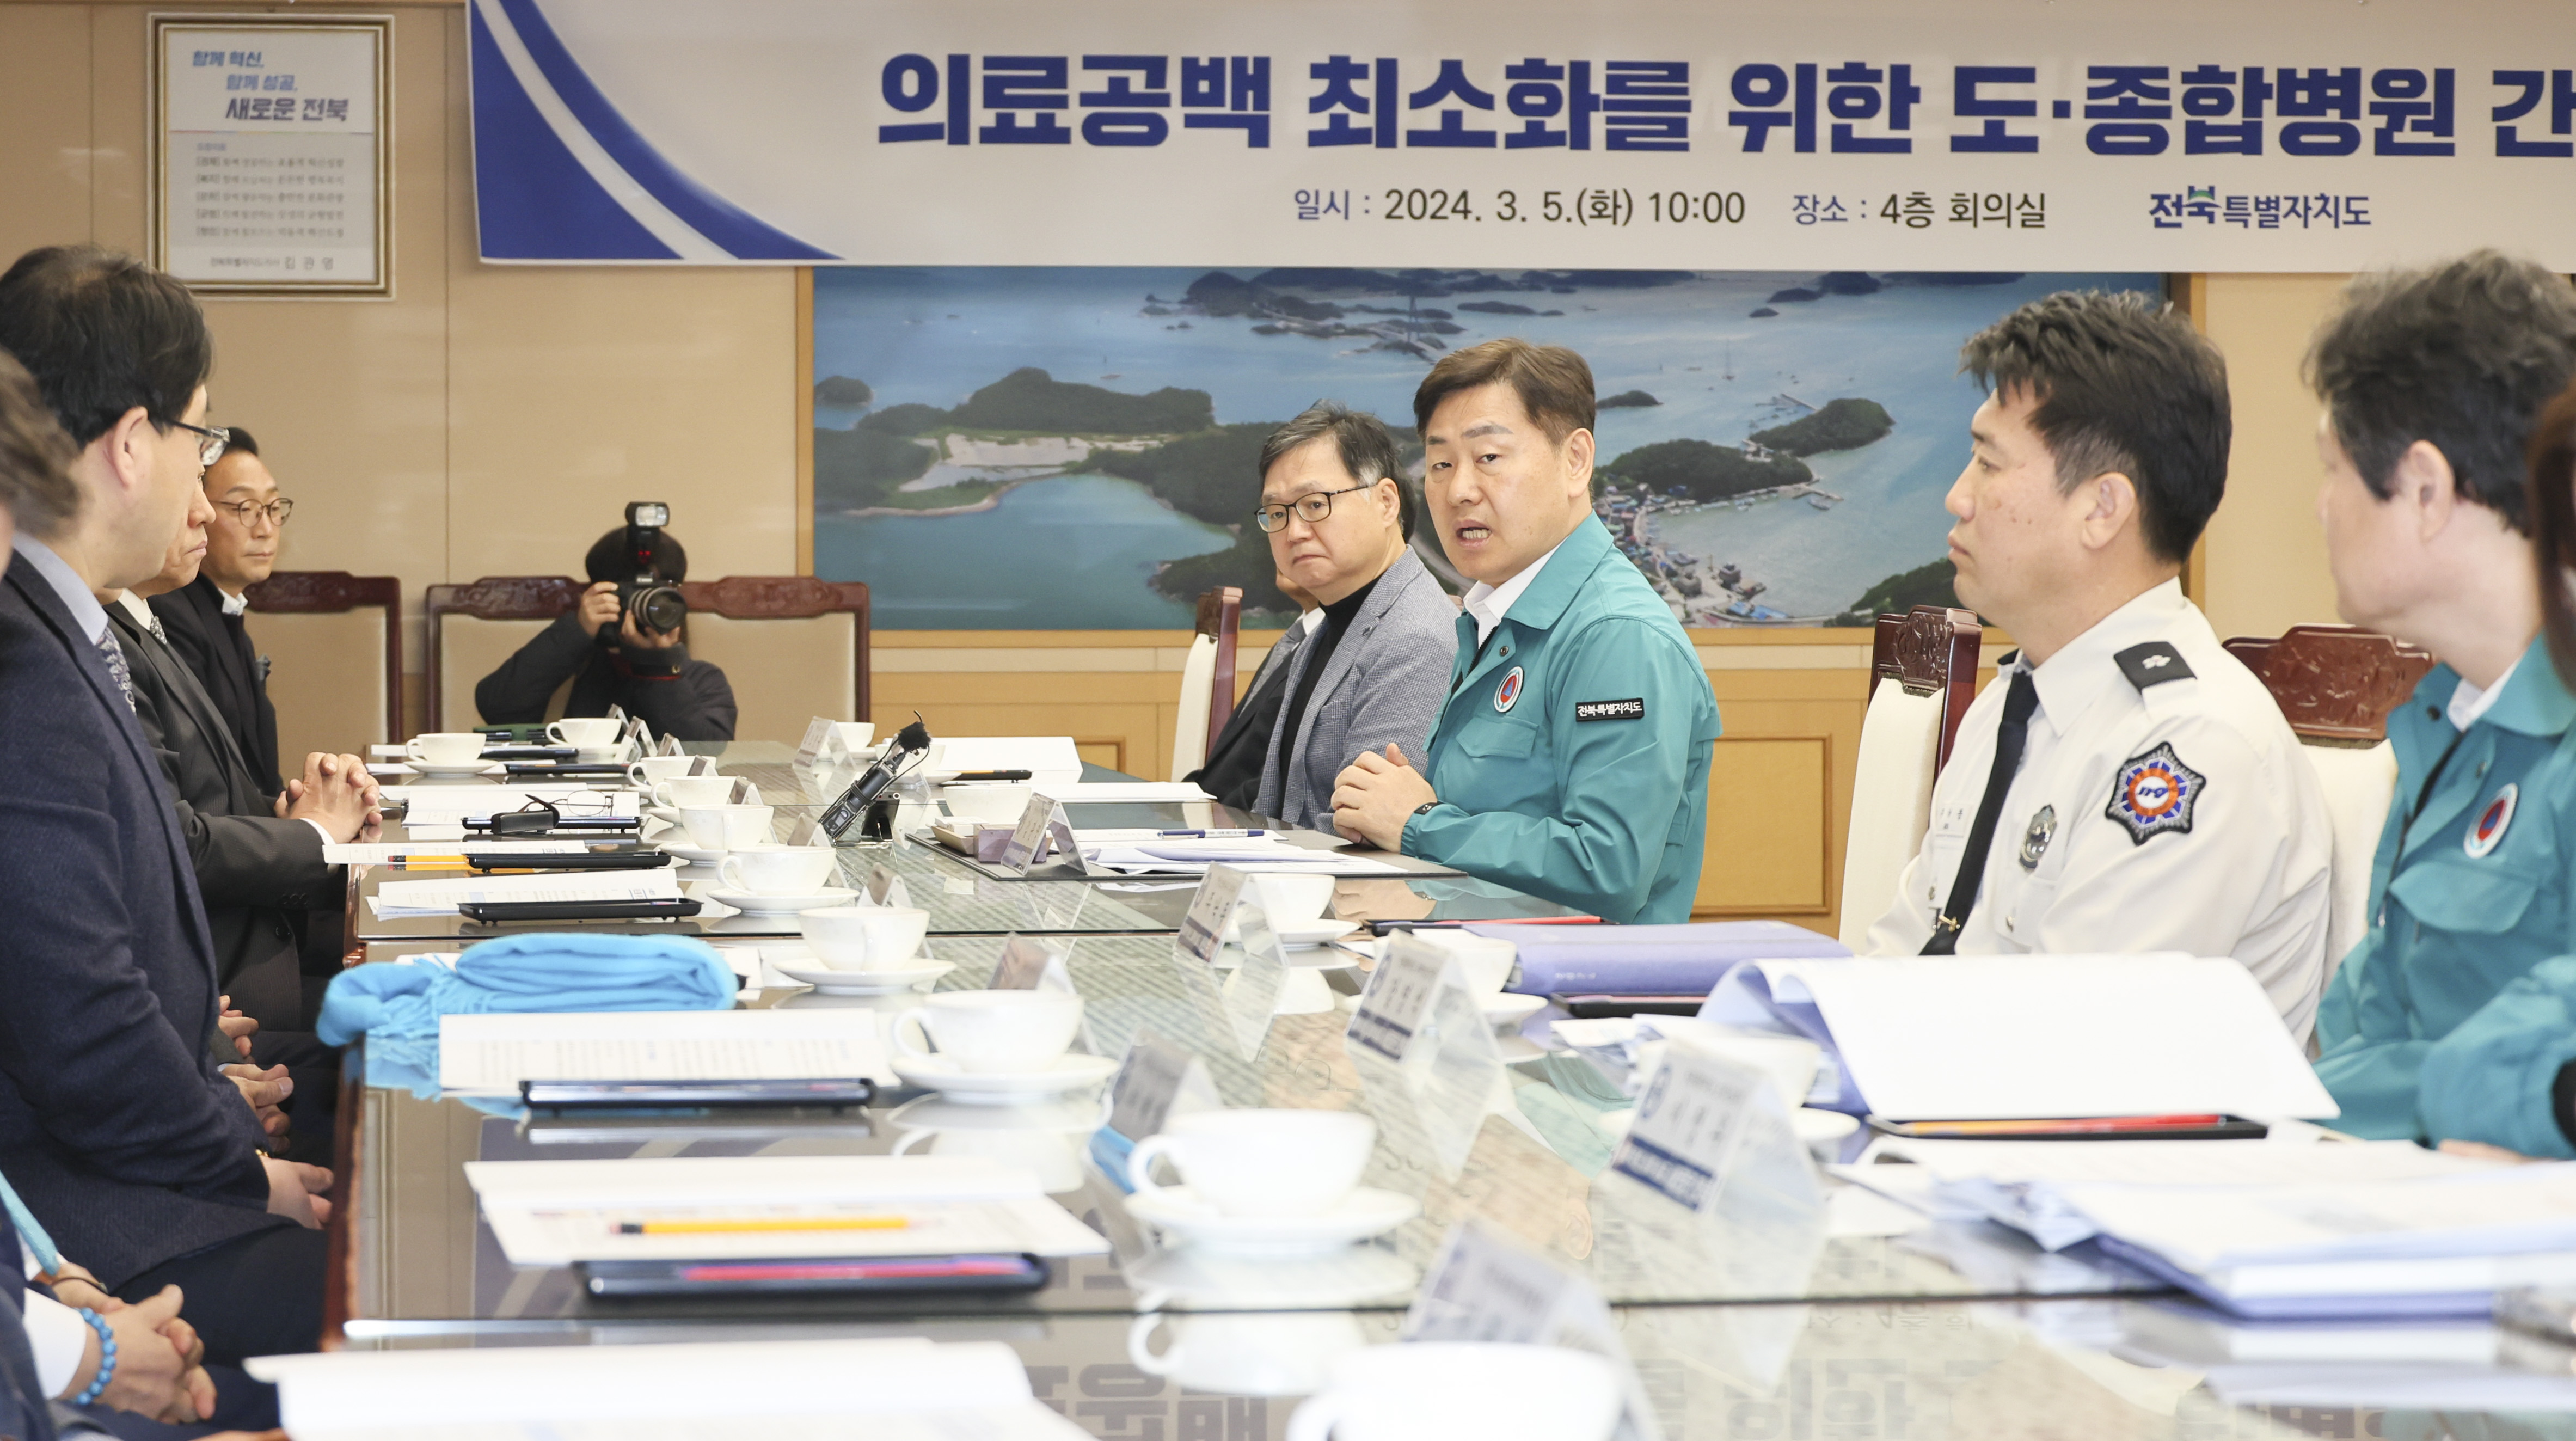 Tỉnh tự trị đặc biệt Jeonbuk, thảo luận với các bệnh viện đa khoa trong tỉnh về việc giảm thiểu khoảng trống điều trị image(1)